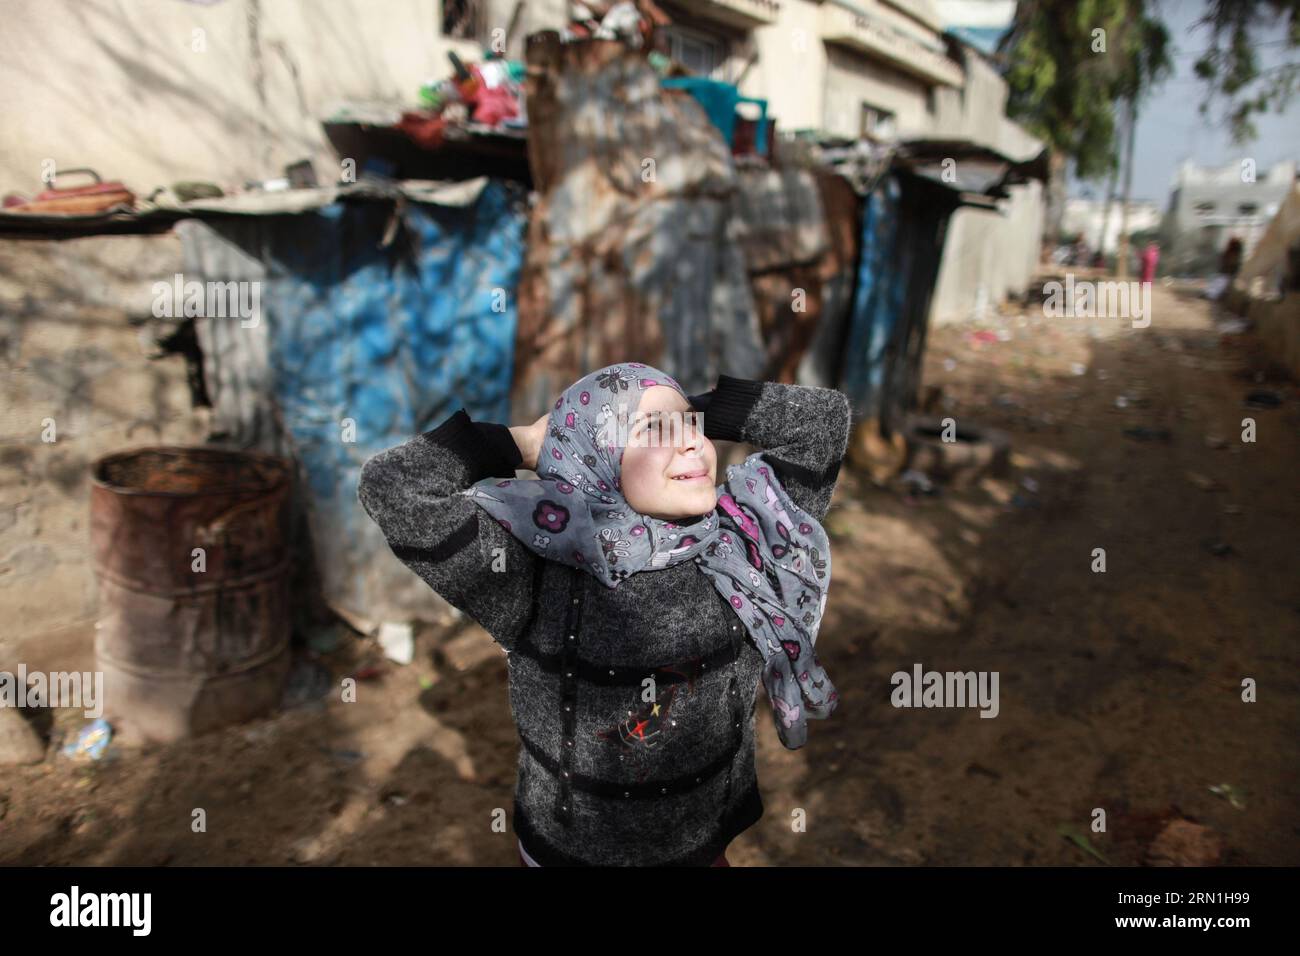 GAZA, le 1 janvier 2015 -- Une fille joue dans un quartier pauvre de la ville de Beit Lahiya, dans le nord de la bande de Gaza, le 1 janvier 2015. Des statistiques récentes de la Fédération générale palestinienne des syndicats (PGFTU) ont révélé que le chômage à Gaza s’élève à 200 000 000 personnes. Sami Al-Amasi, président du PGFTU à Gaza, a déclaré que cela représentait une augmentation de 30 000 personnes depuis avant la dernière guerre avec Israël, une situation qui est la pire depuis dix ans. ) (Lyi) MIDEAST-GAZA-LIFE WissamxNassar PUBLICATIONxNOTxINxCHN Gaza Jan 1 2015 une fille JOUE dans un quartier pauvre dans la ville du nord de la bande de Gaza Banque D'Images